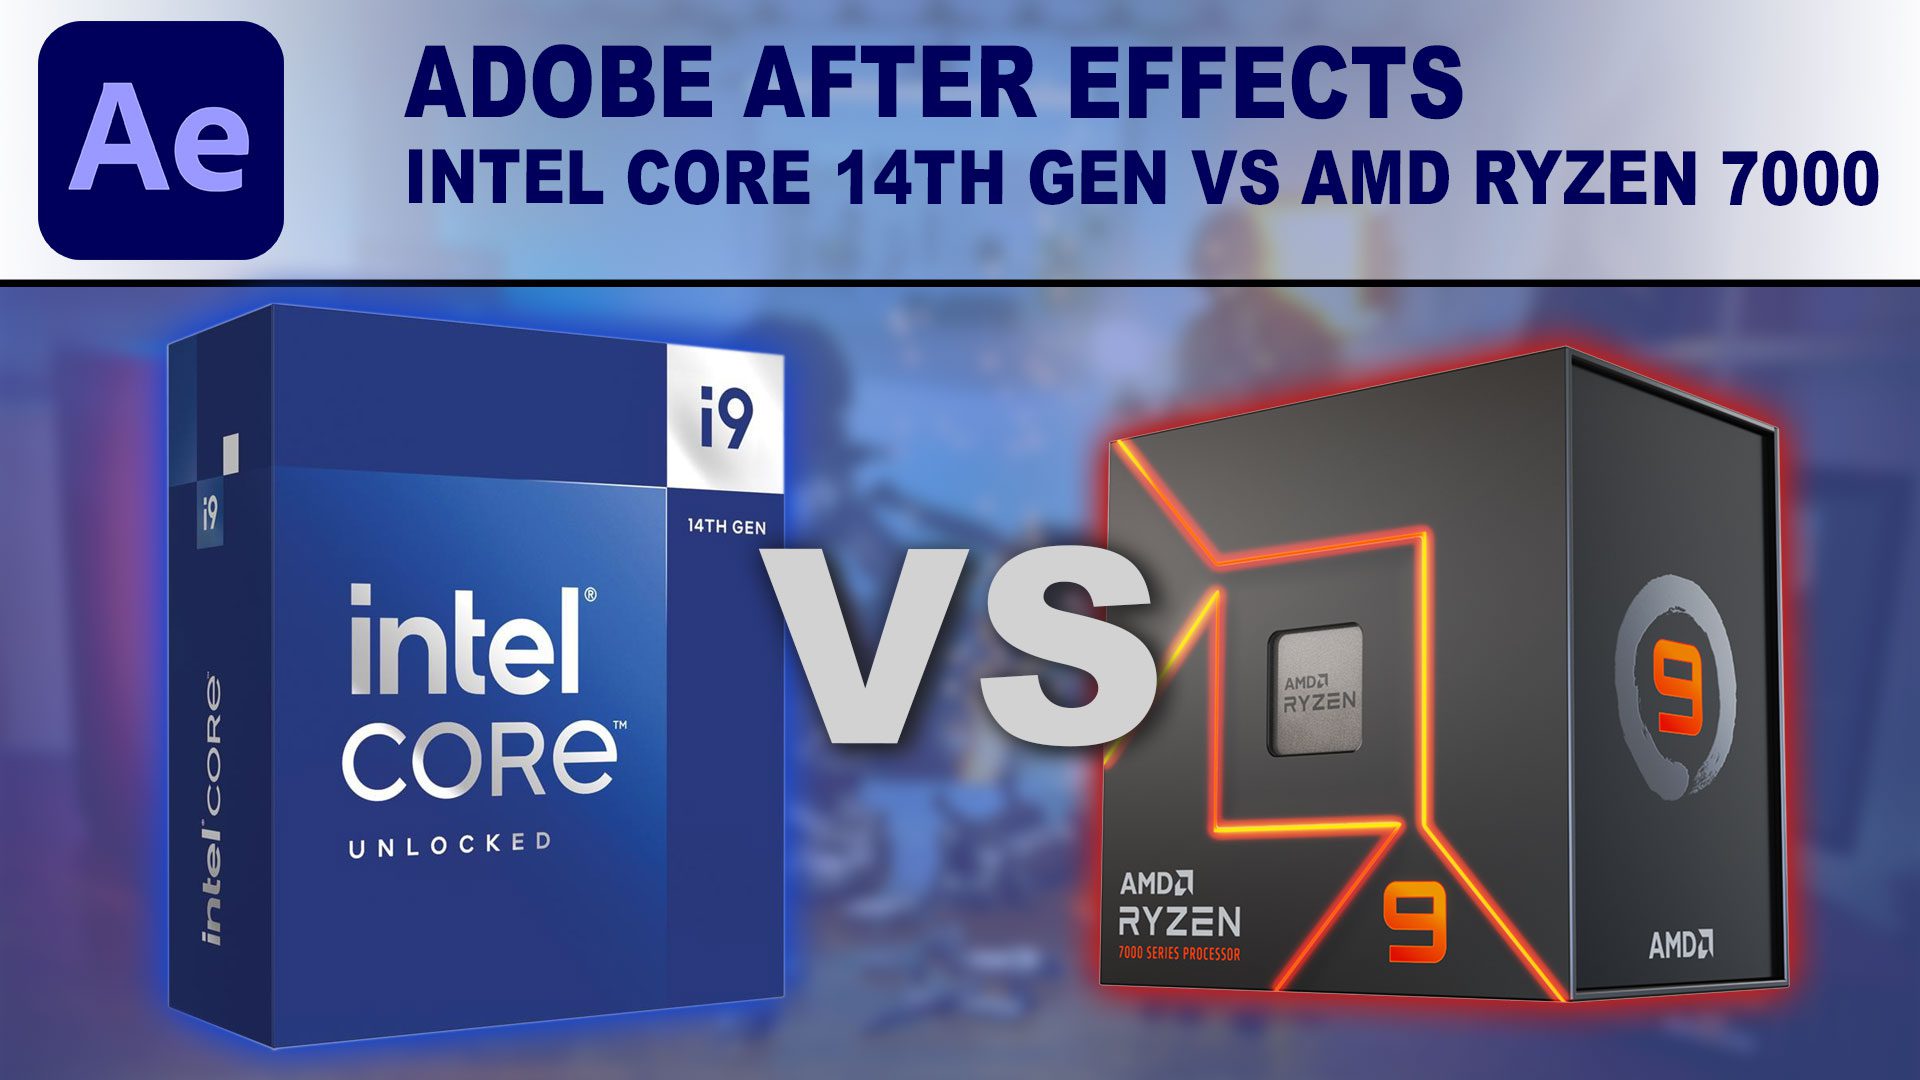 Adobe After Effects: Intel Core 14th Gen vs AMD Ryzen 7000